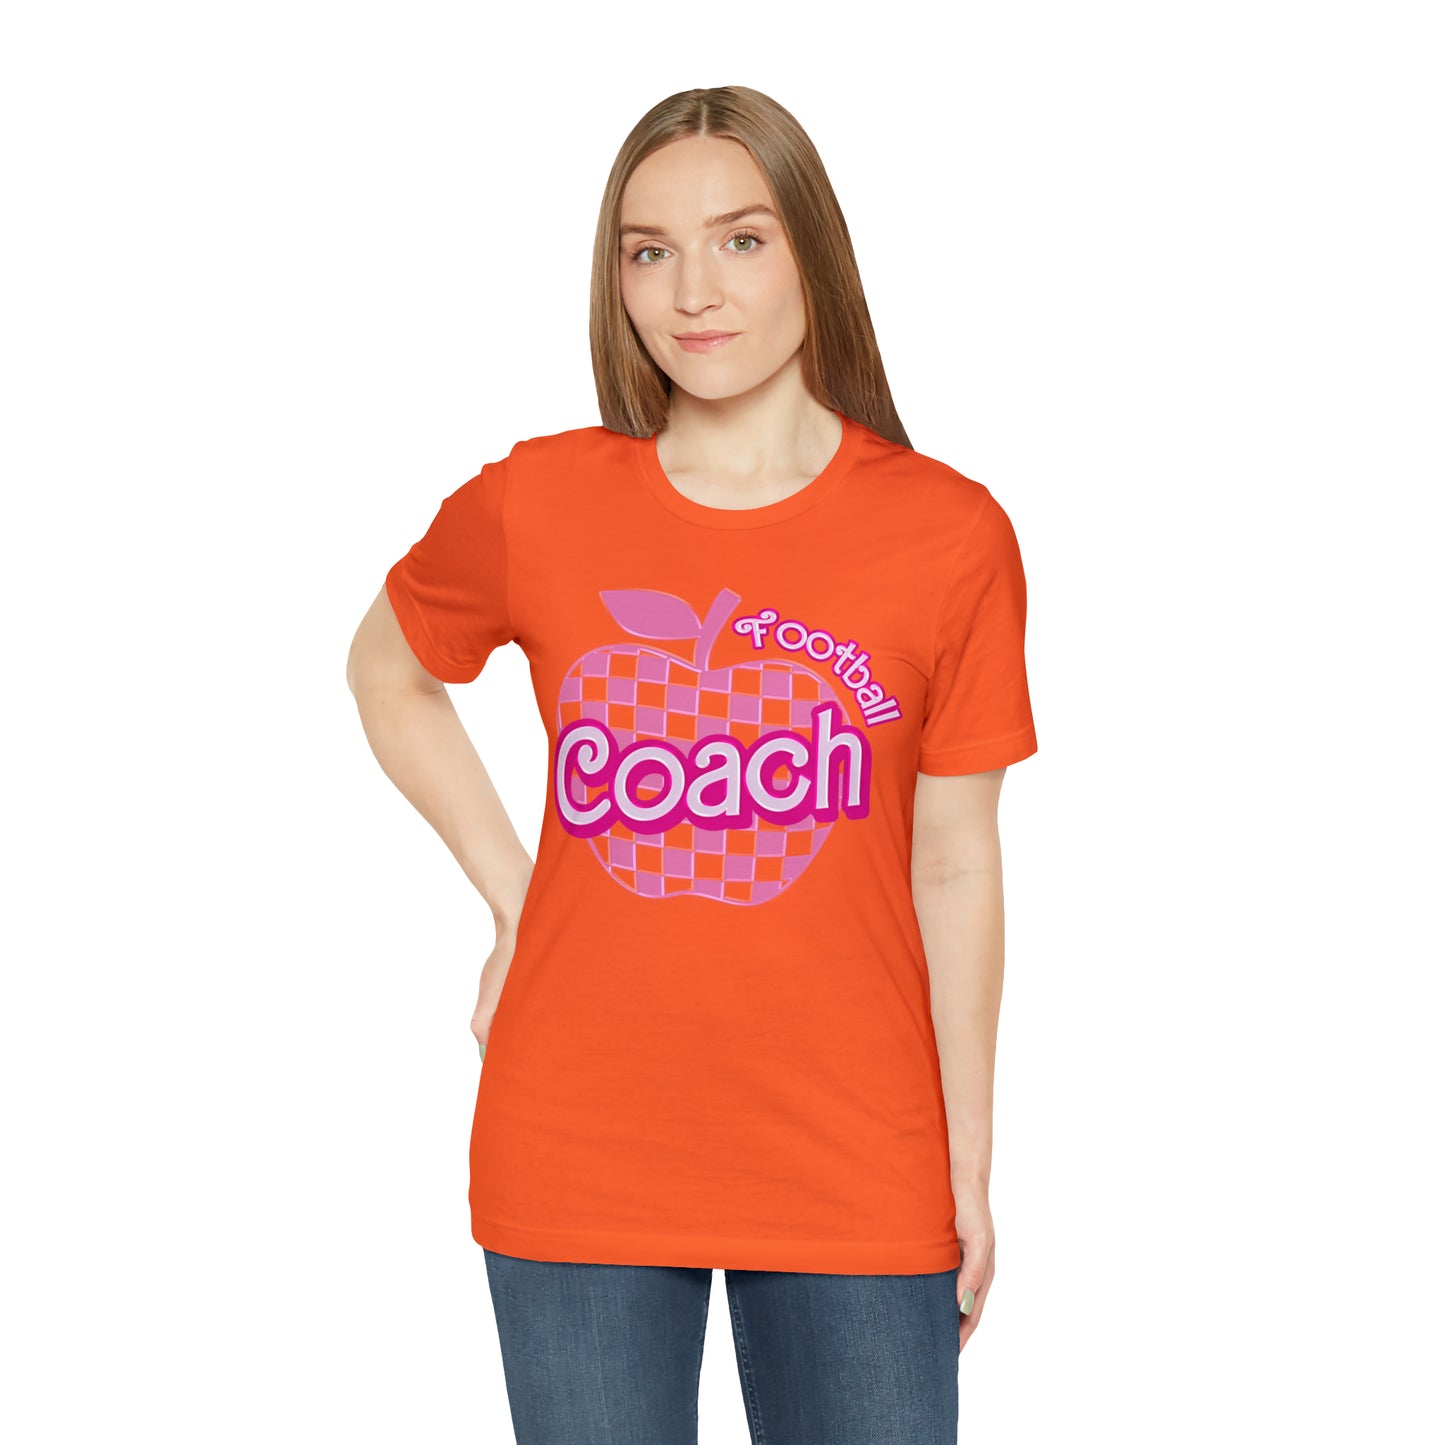 Football Coach shirt, Pink Sport Coach Shirt, Colorful Coaching shirt, 90s Cheer Coach shirt, Back To School Shirt, Teacher Gift, T820